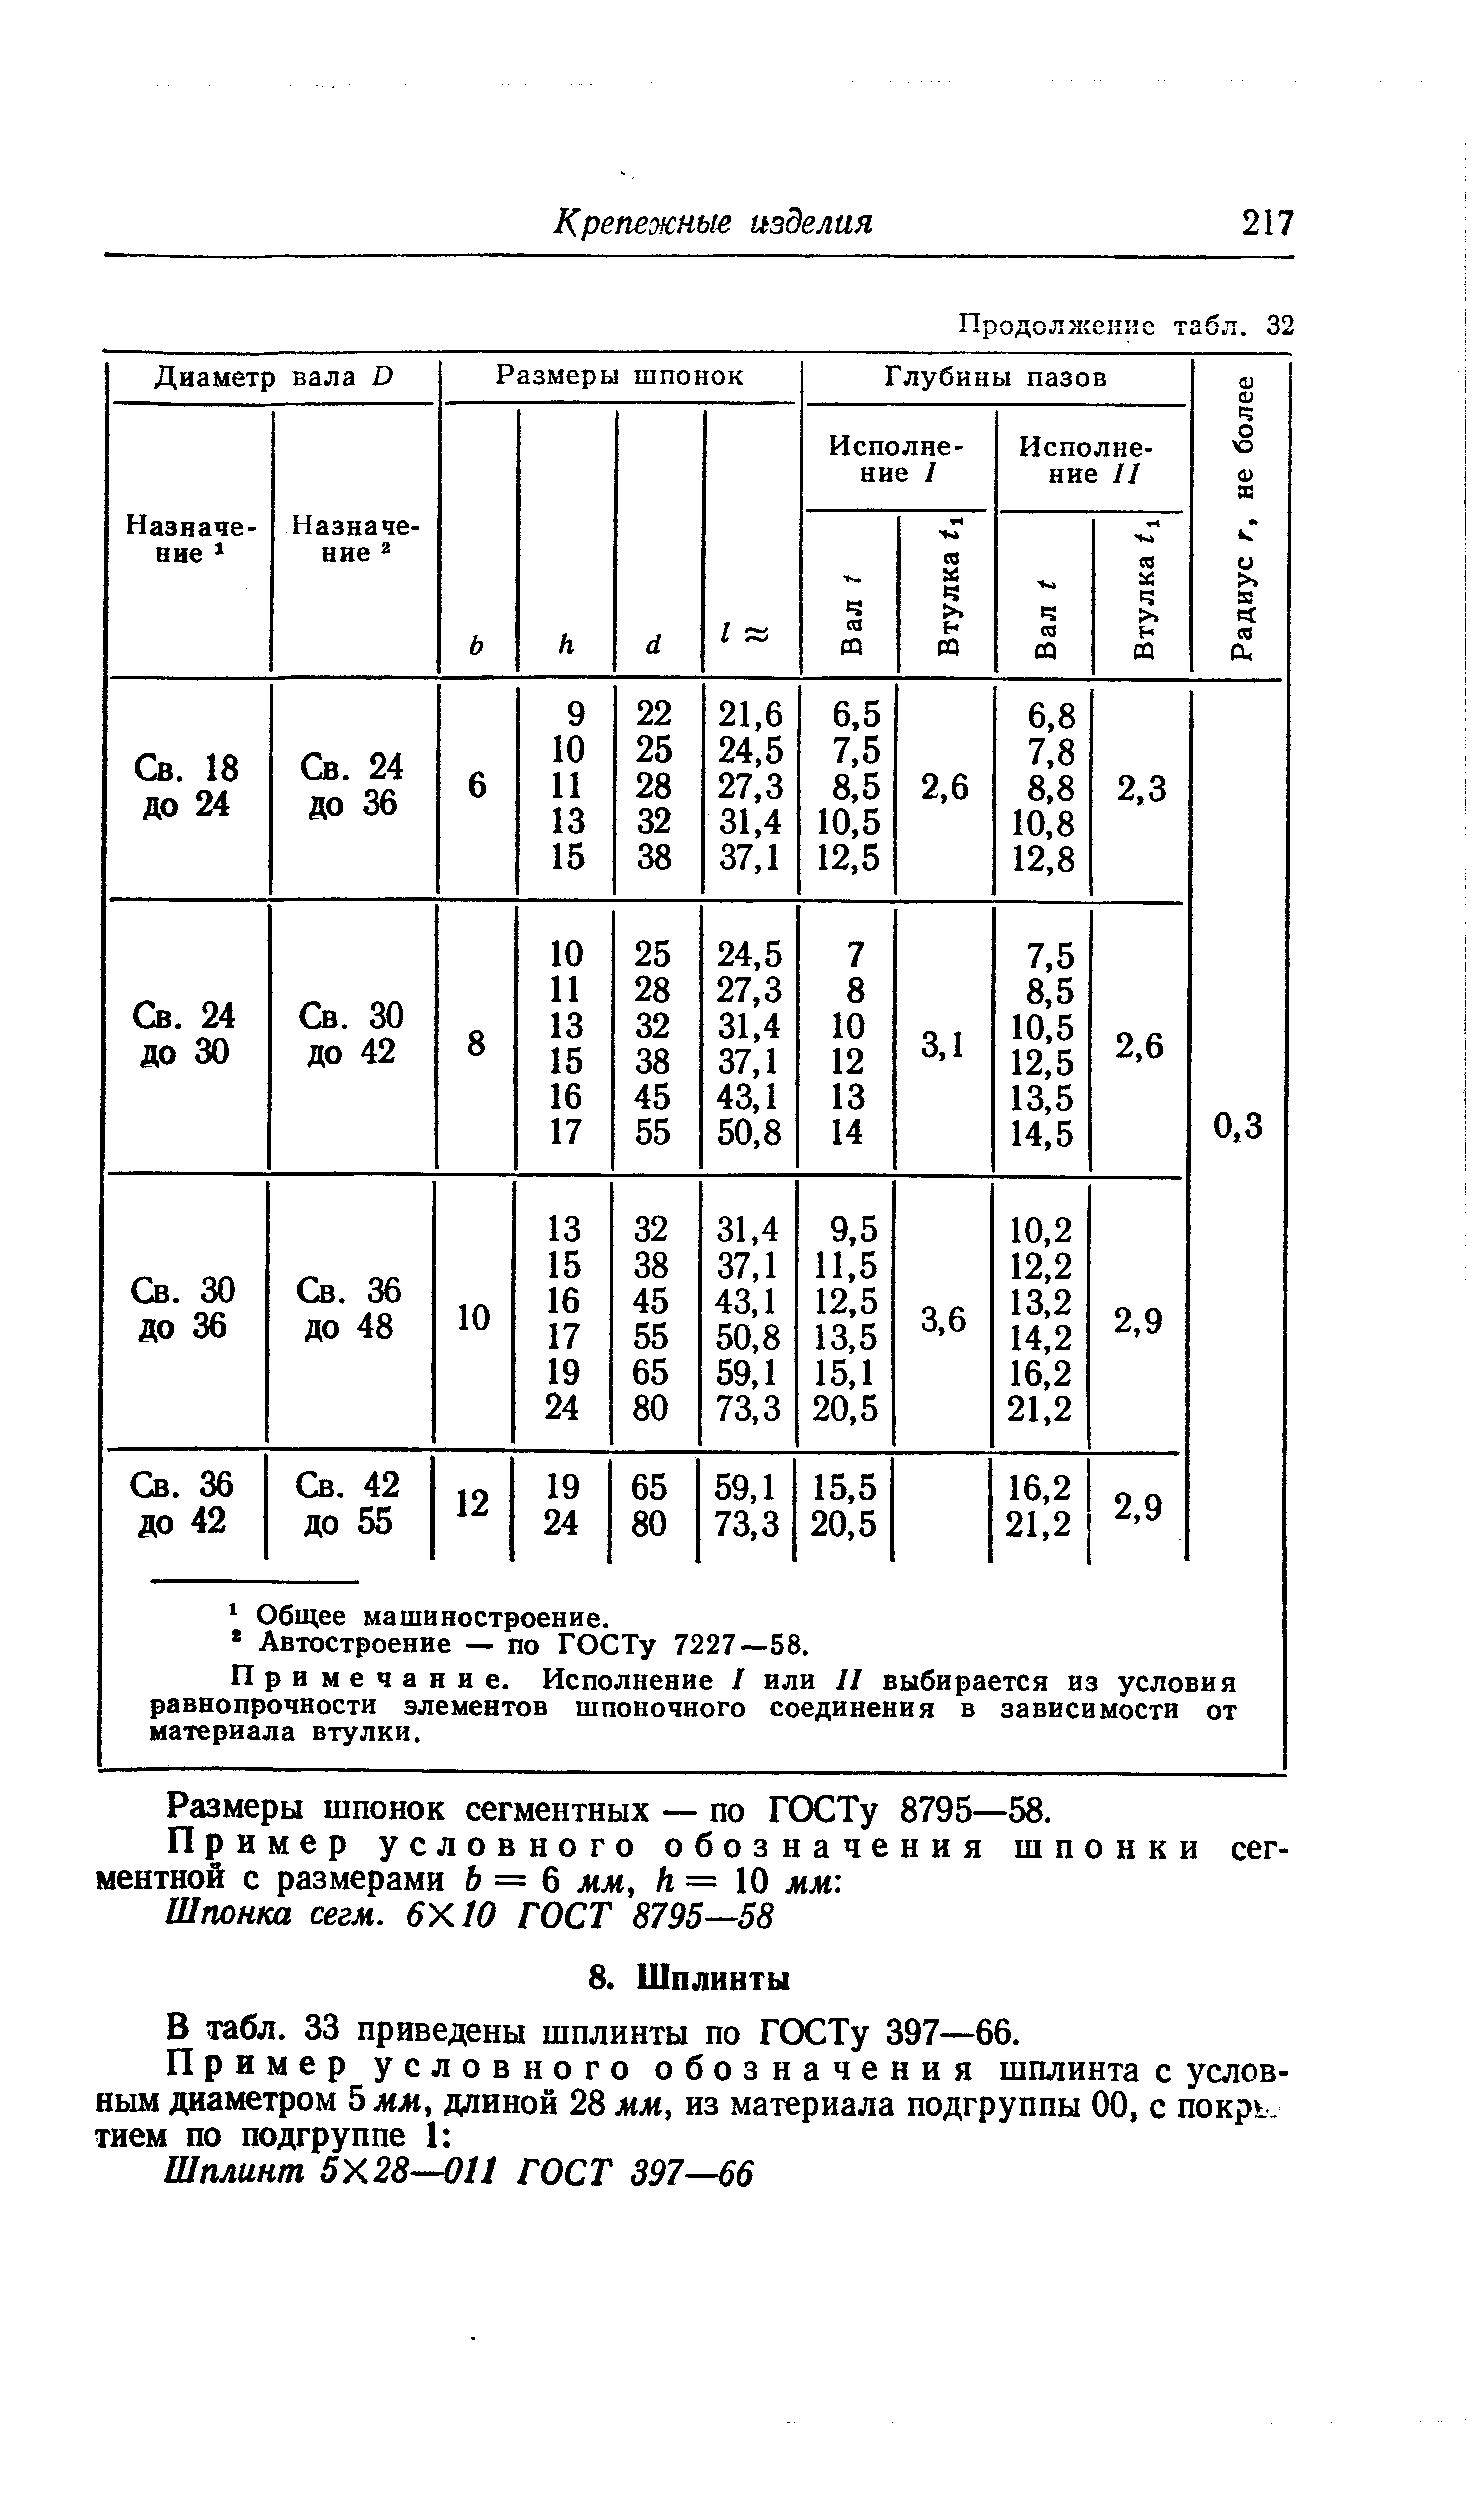 В табл. 33 приведены шплинты по ГОСТу 397—66.
